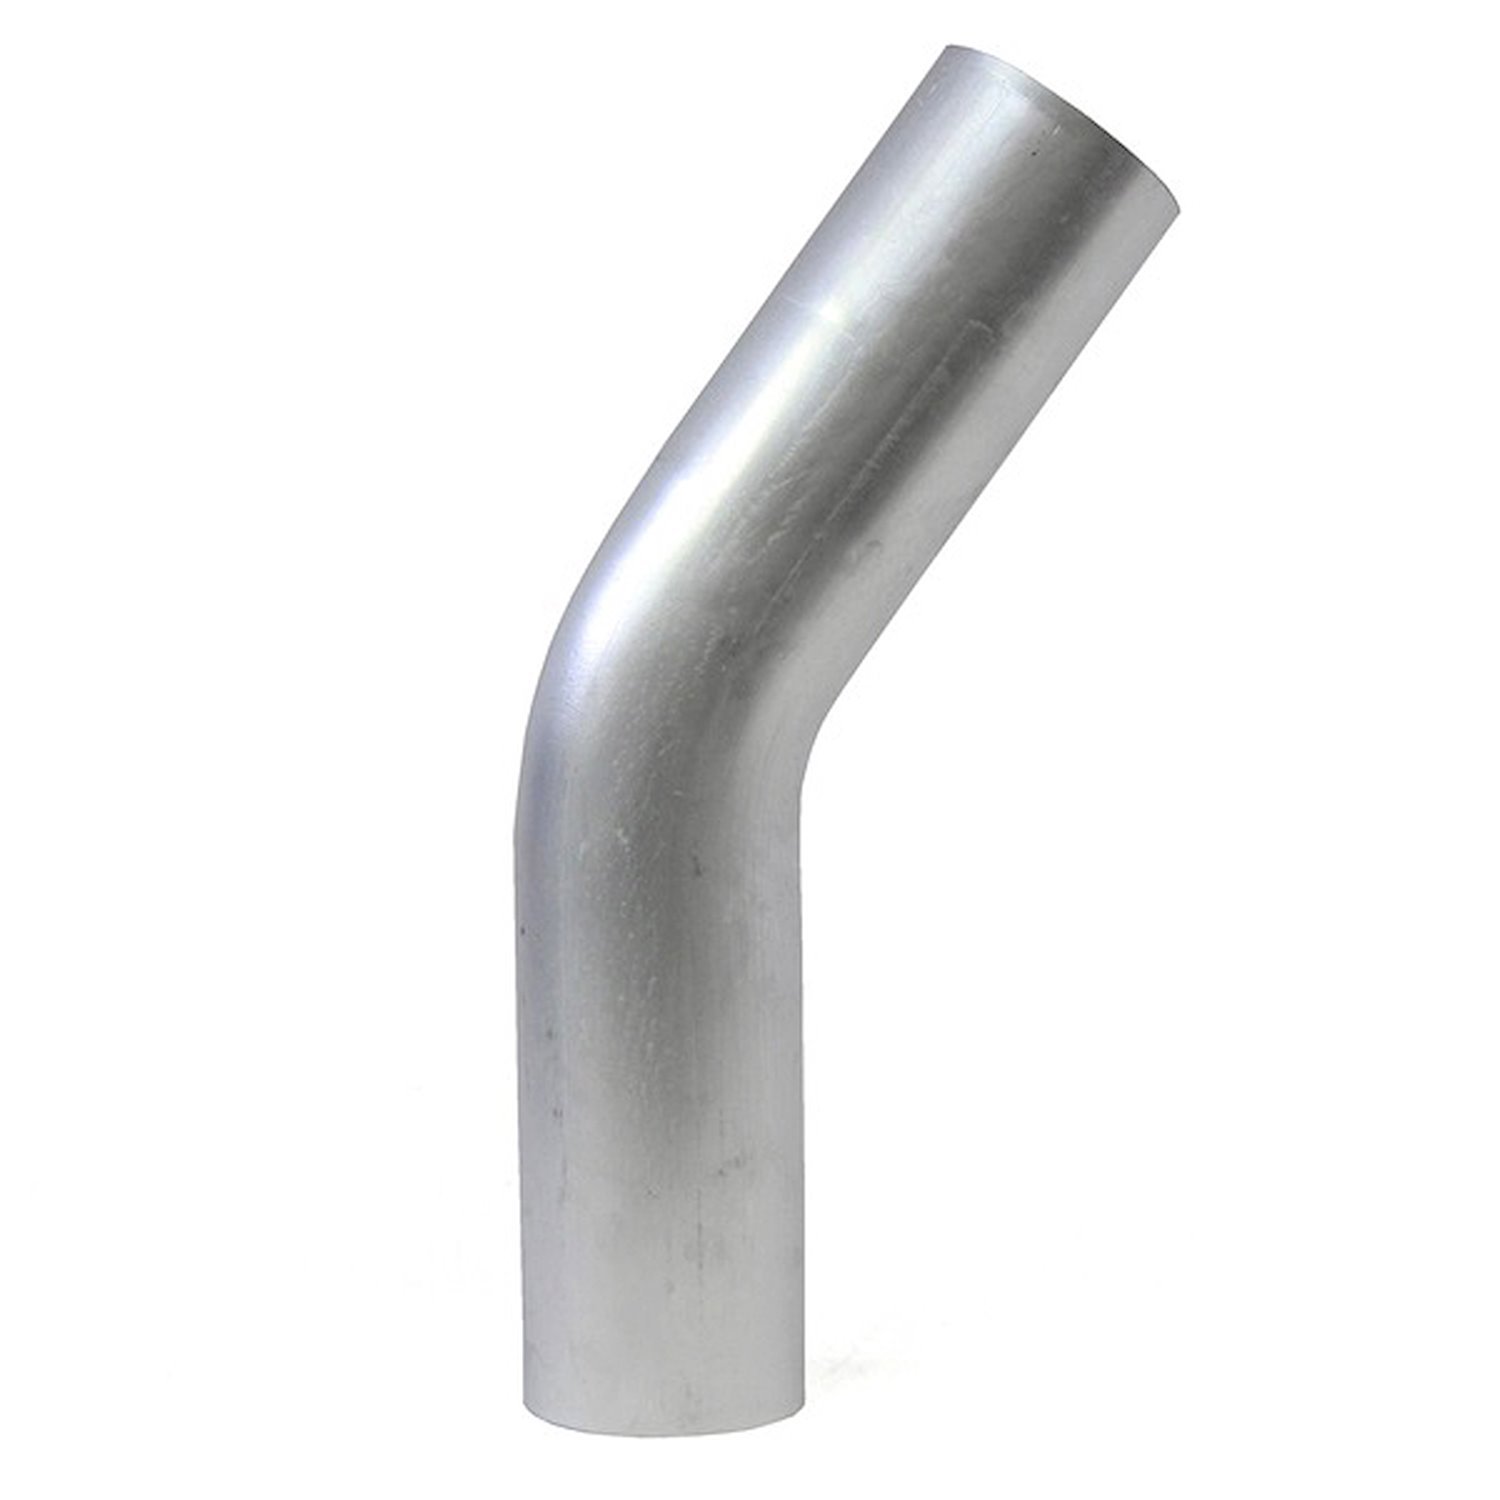 AT35-250-CLR-25 Aluminum Elbow Tube, 6061 Aluminum, 35-Degree Bend Elbow Tubing, 2-1/2 in. OD, Tight Radius, 2-1/2 in. CLR